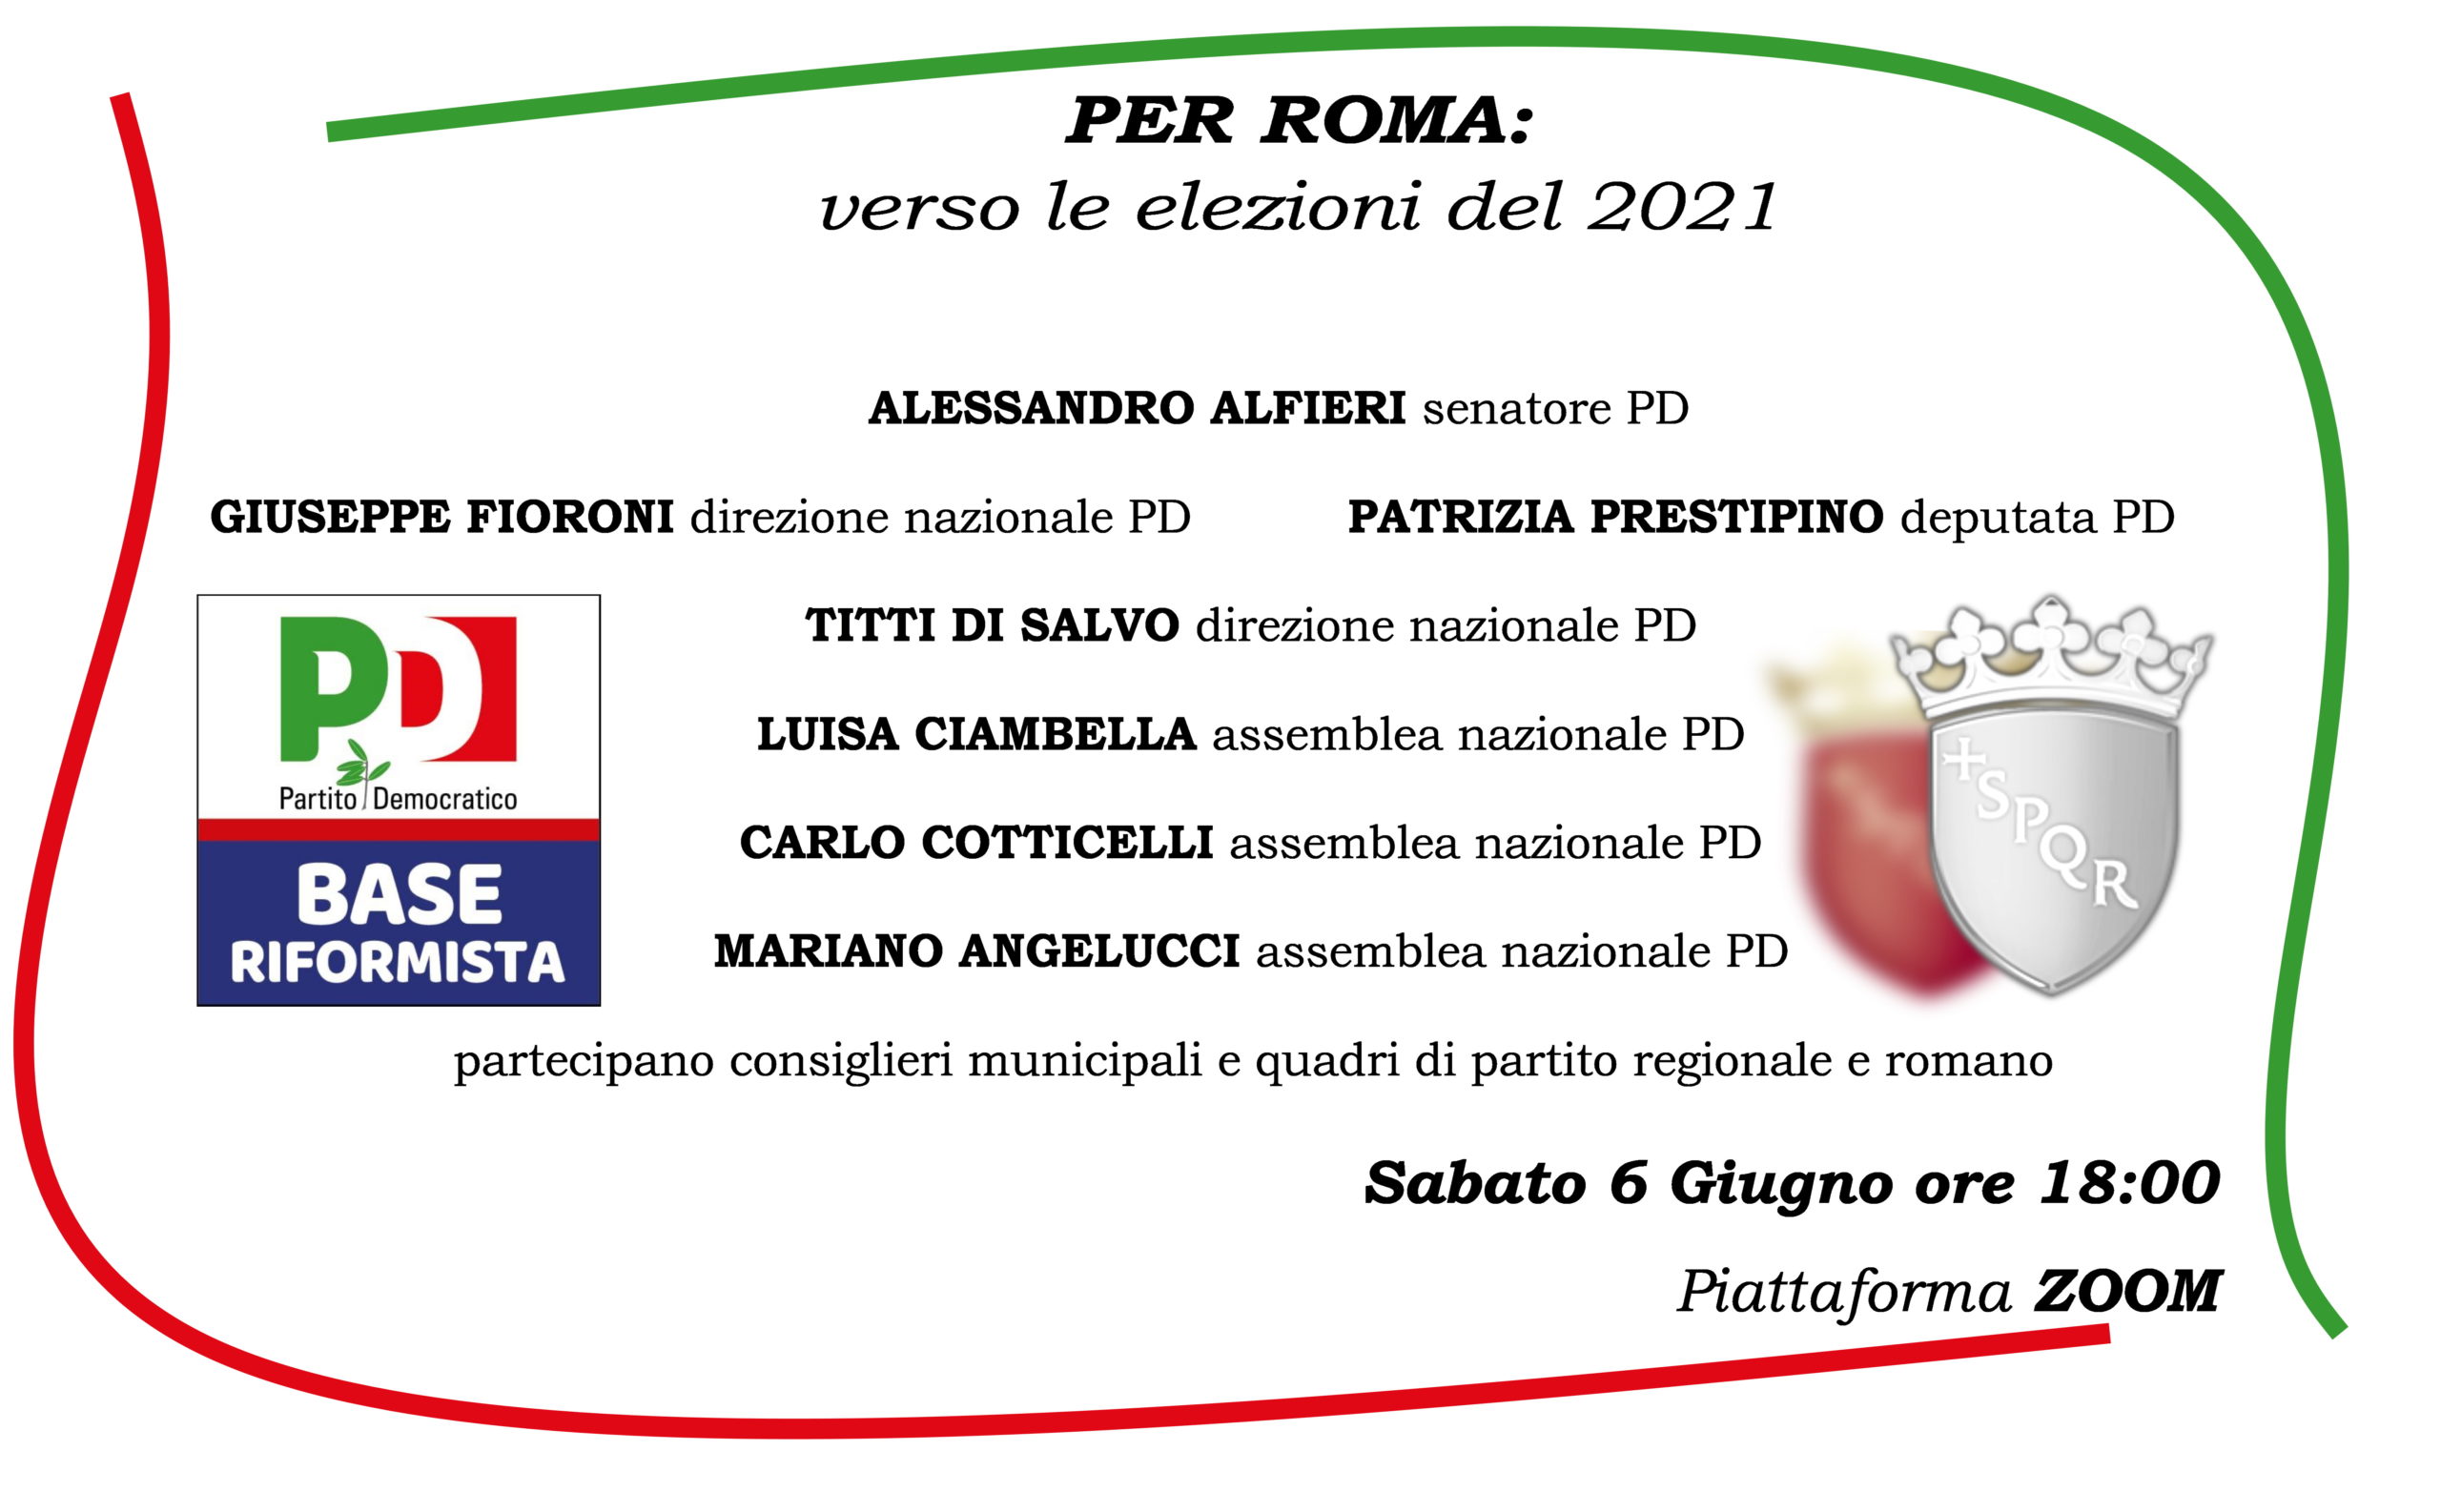 PER ROMA: verso le elezioni del 2021